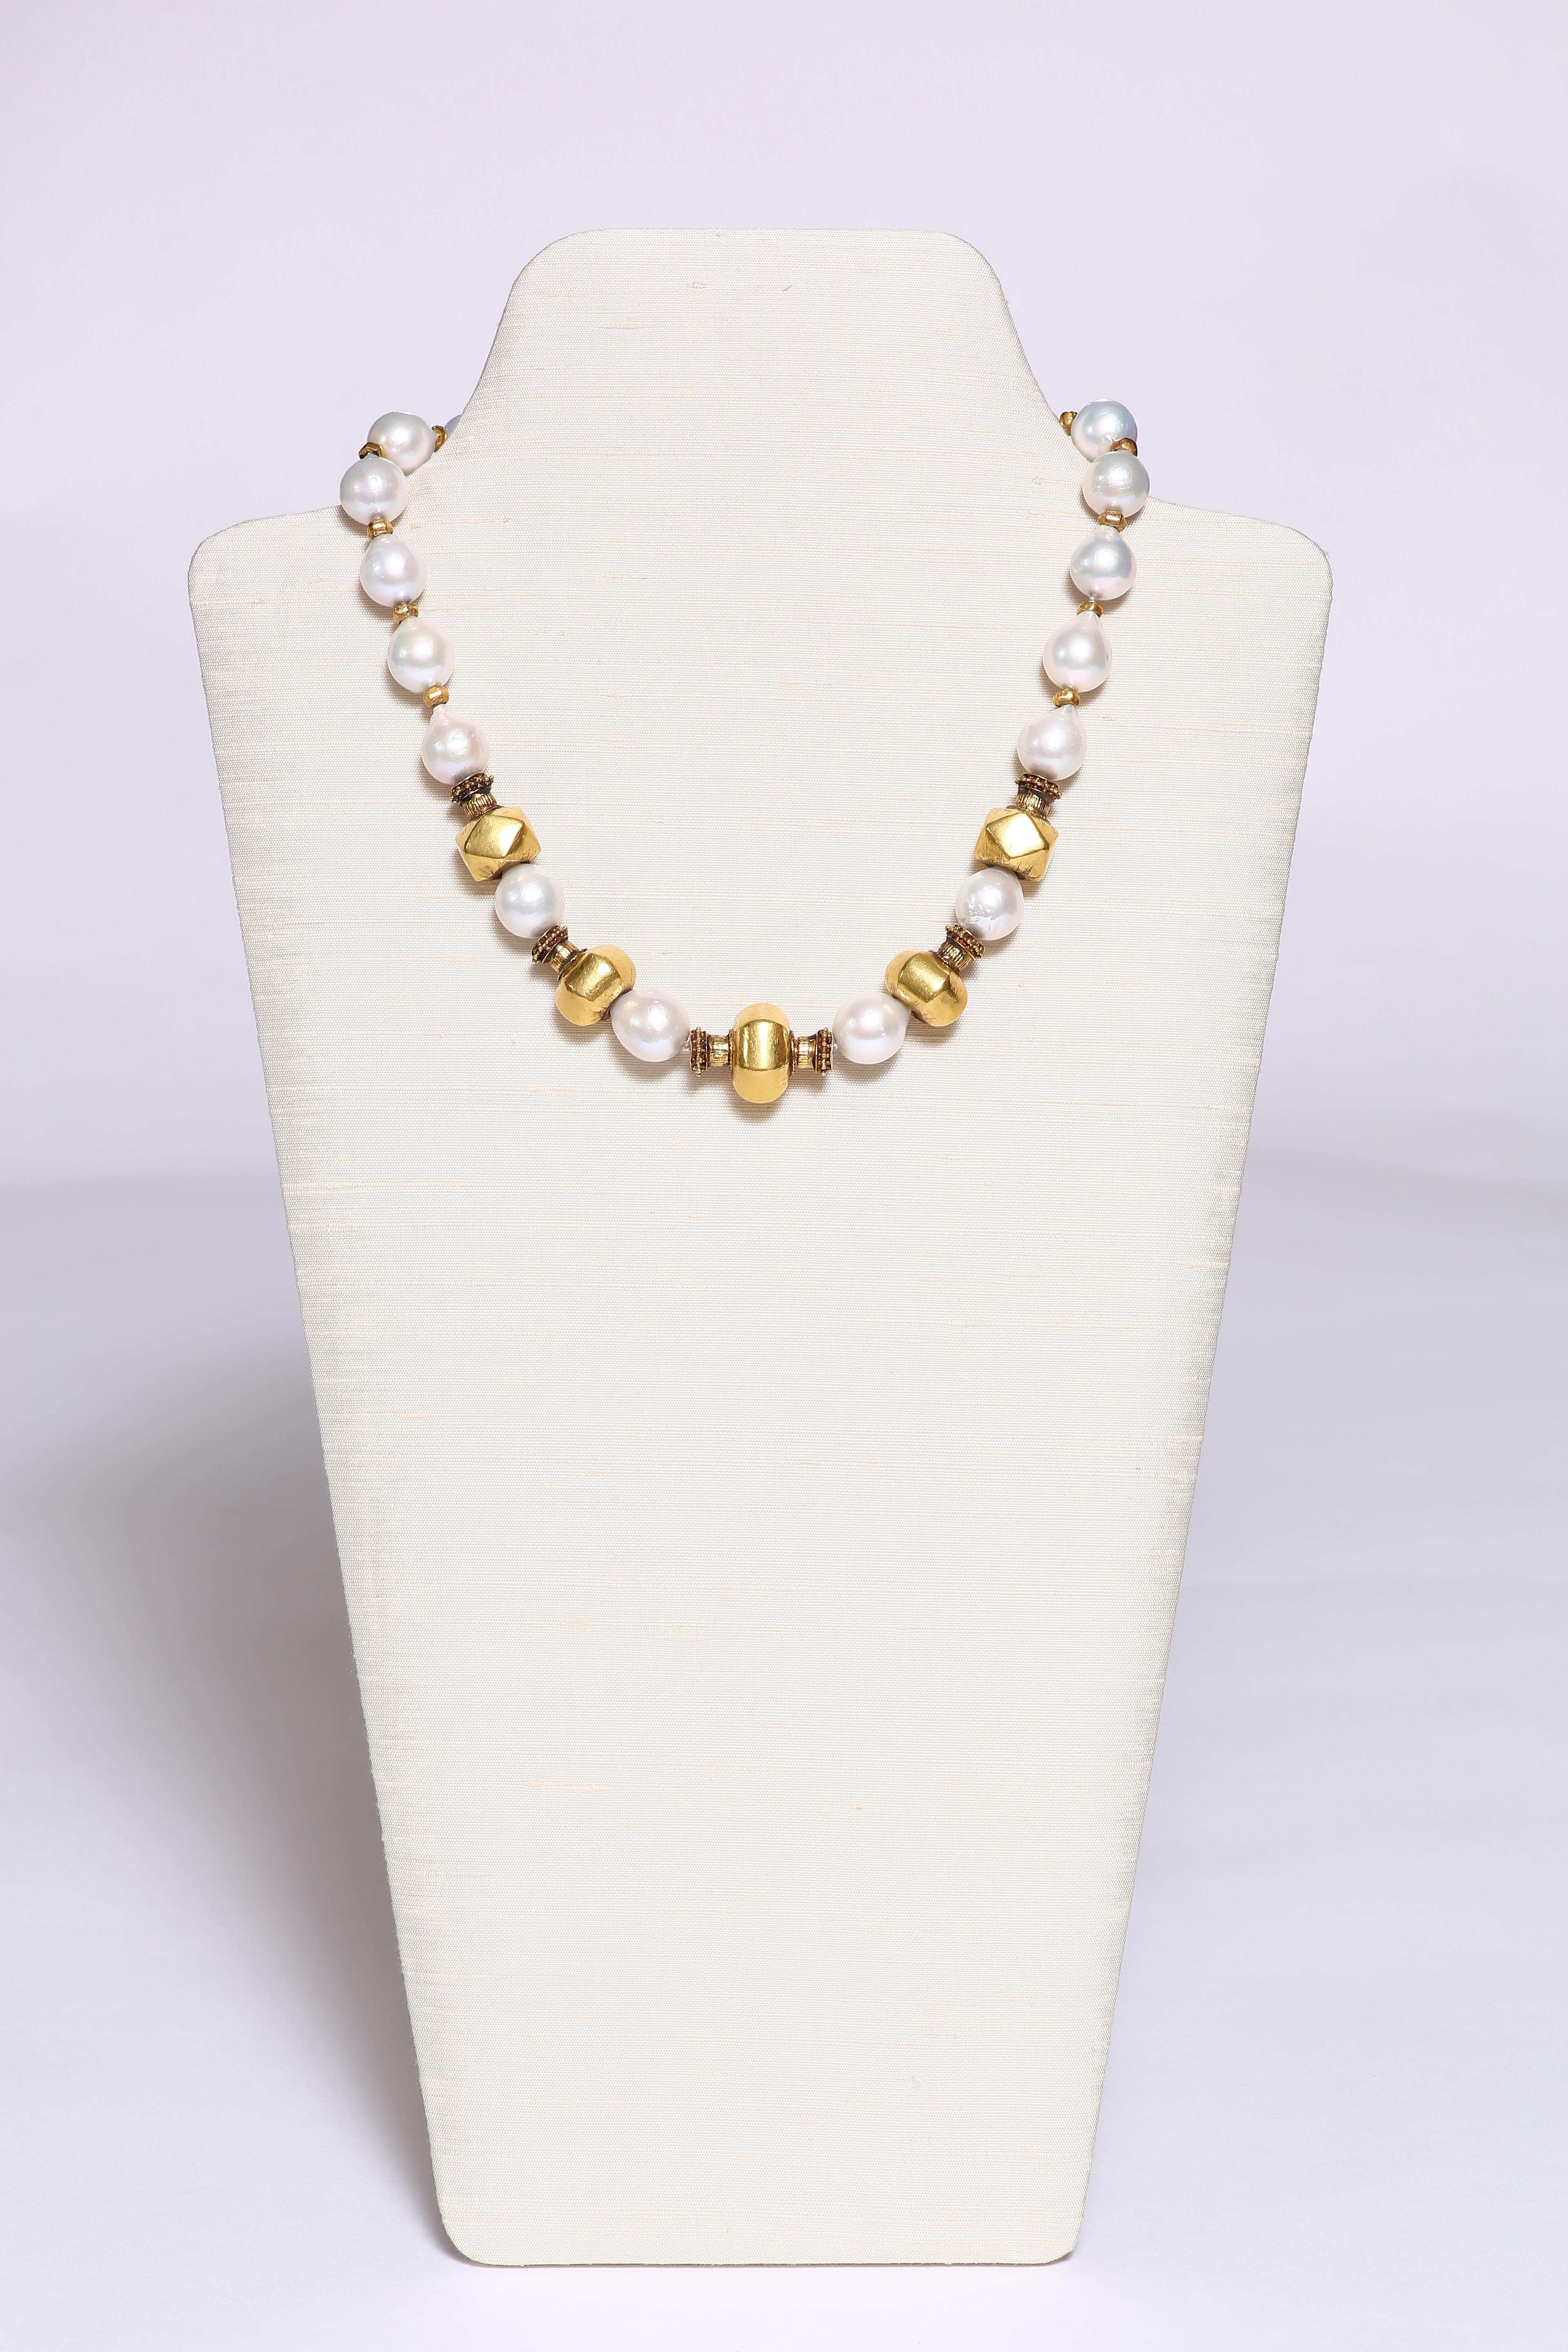 Fünf große, glänzende Goldperlen aus altem Wachs werden von wunderschönen barocken Süßwasserperlen akzentuiert. Die Perlen bilden die Kette mit kleinen facettierten Goldperlen zwischen den einzelnen Perlen. Die Halskette ist 19 